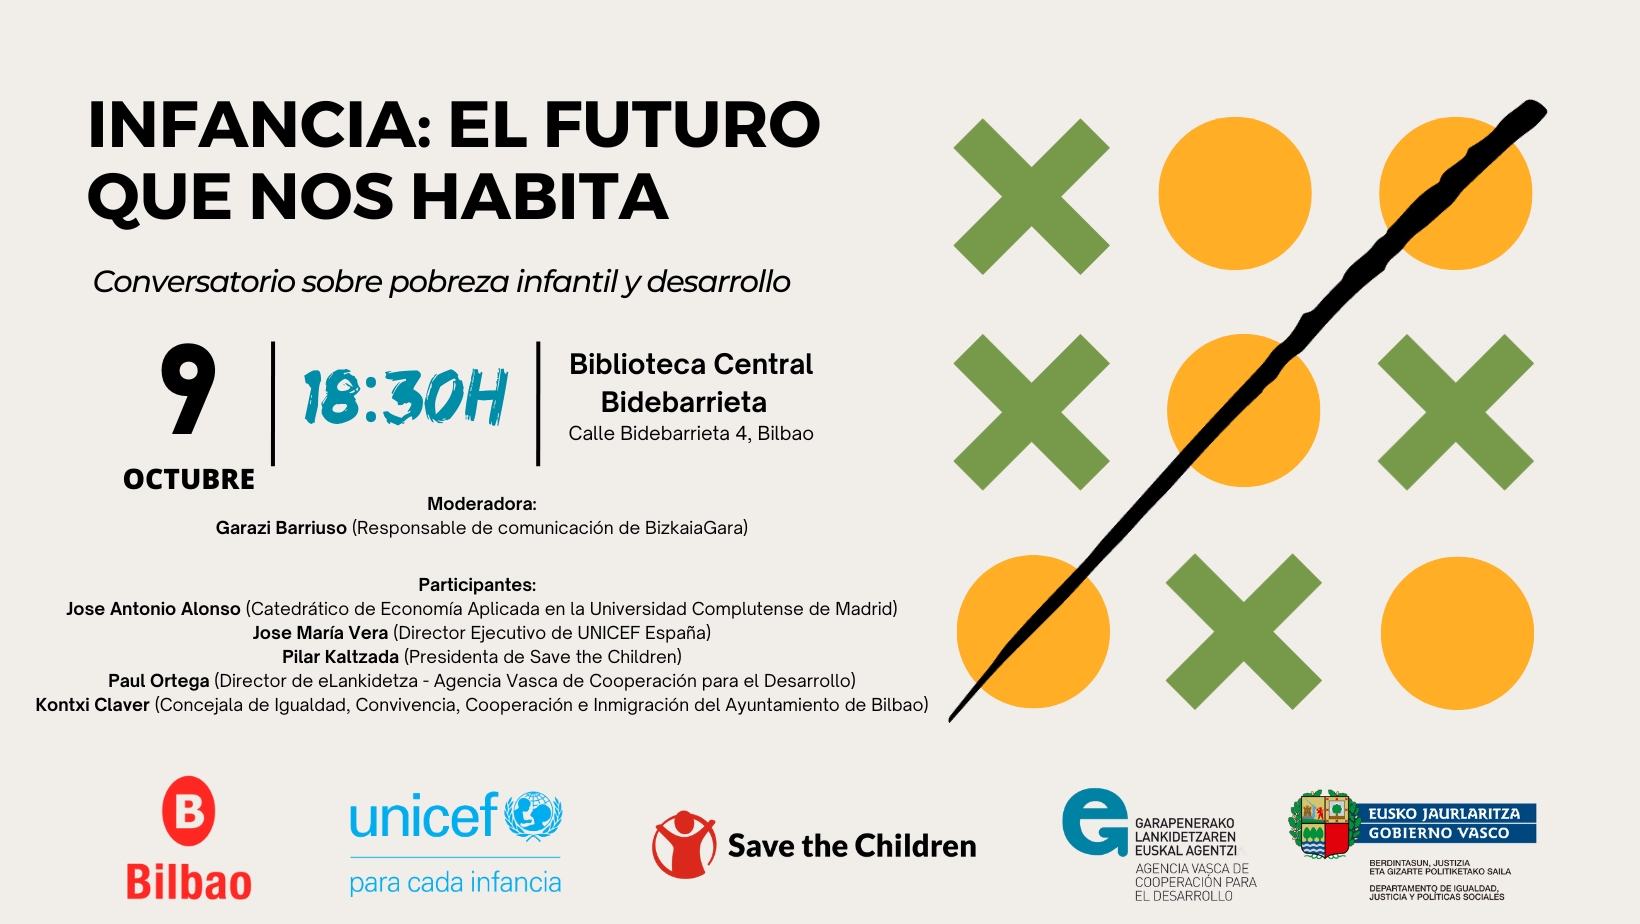 Infancia: El futuro que nos habita. Conversatorio sobre pobreza infantil y desarrollo